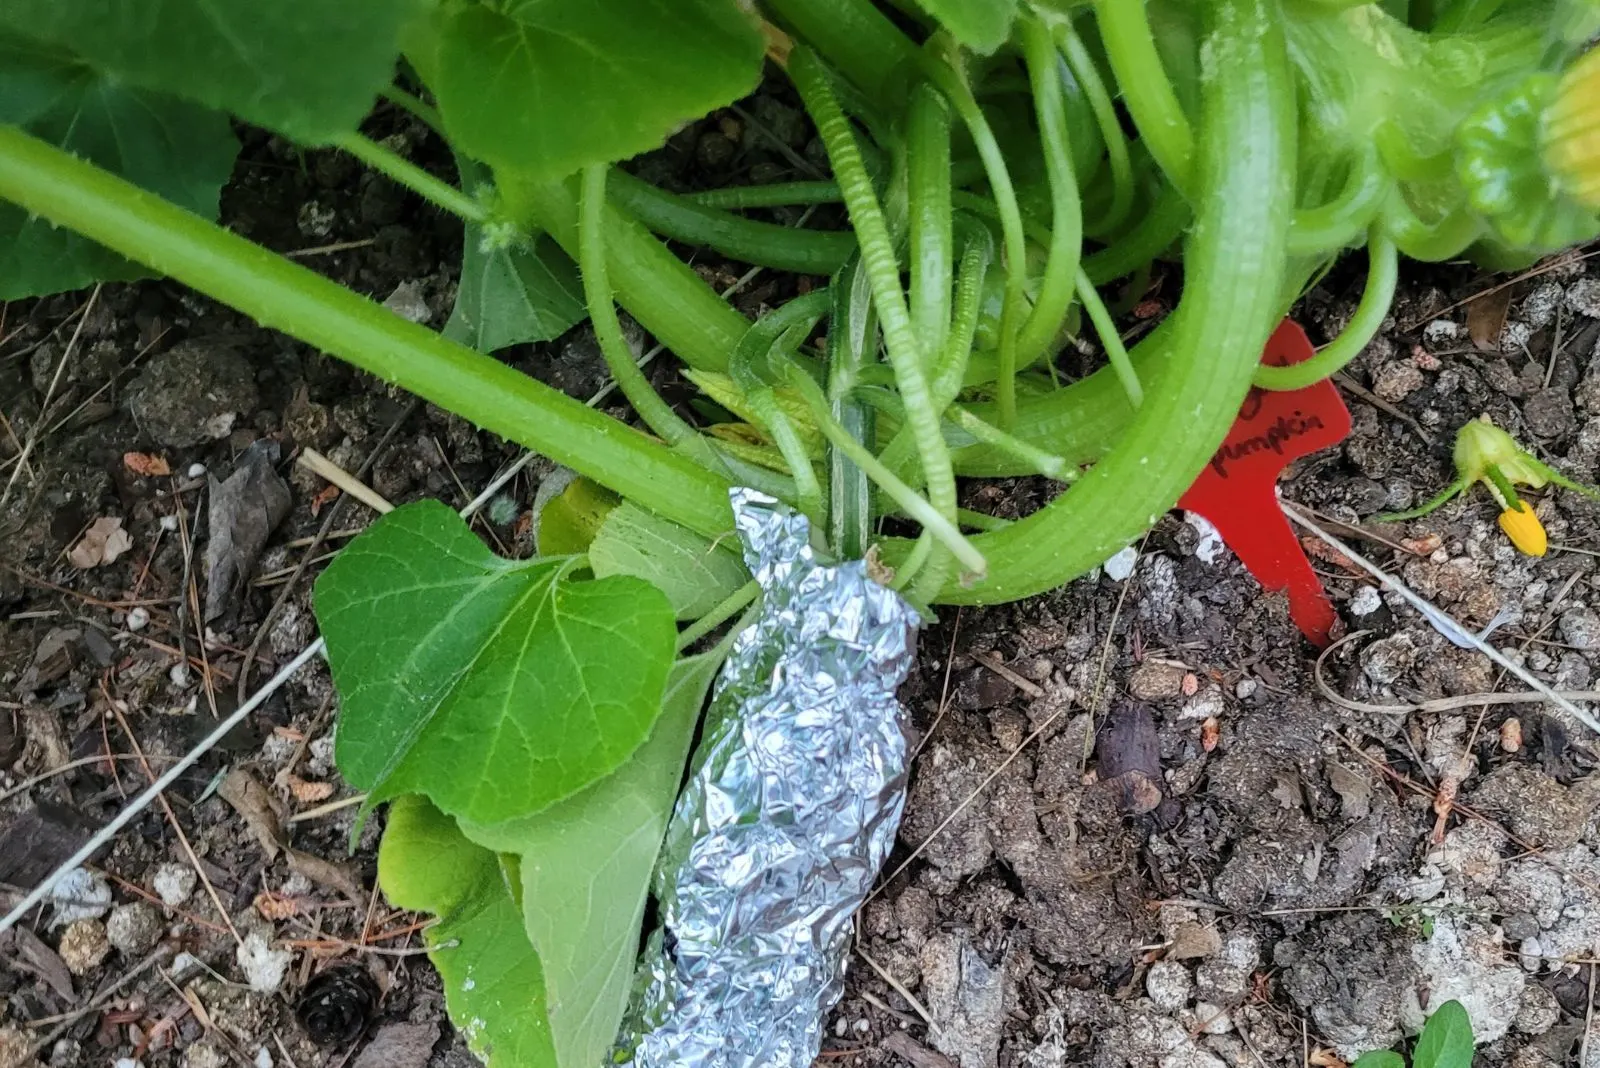 aluminum foil around the plant